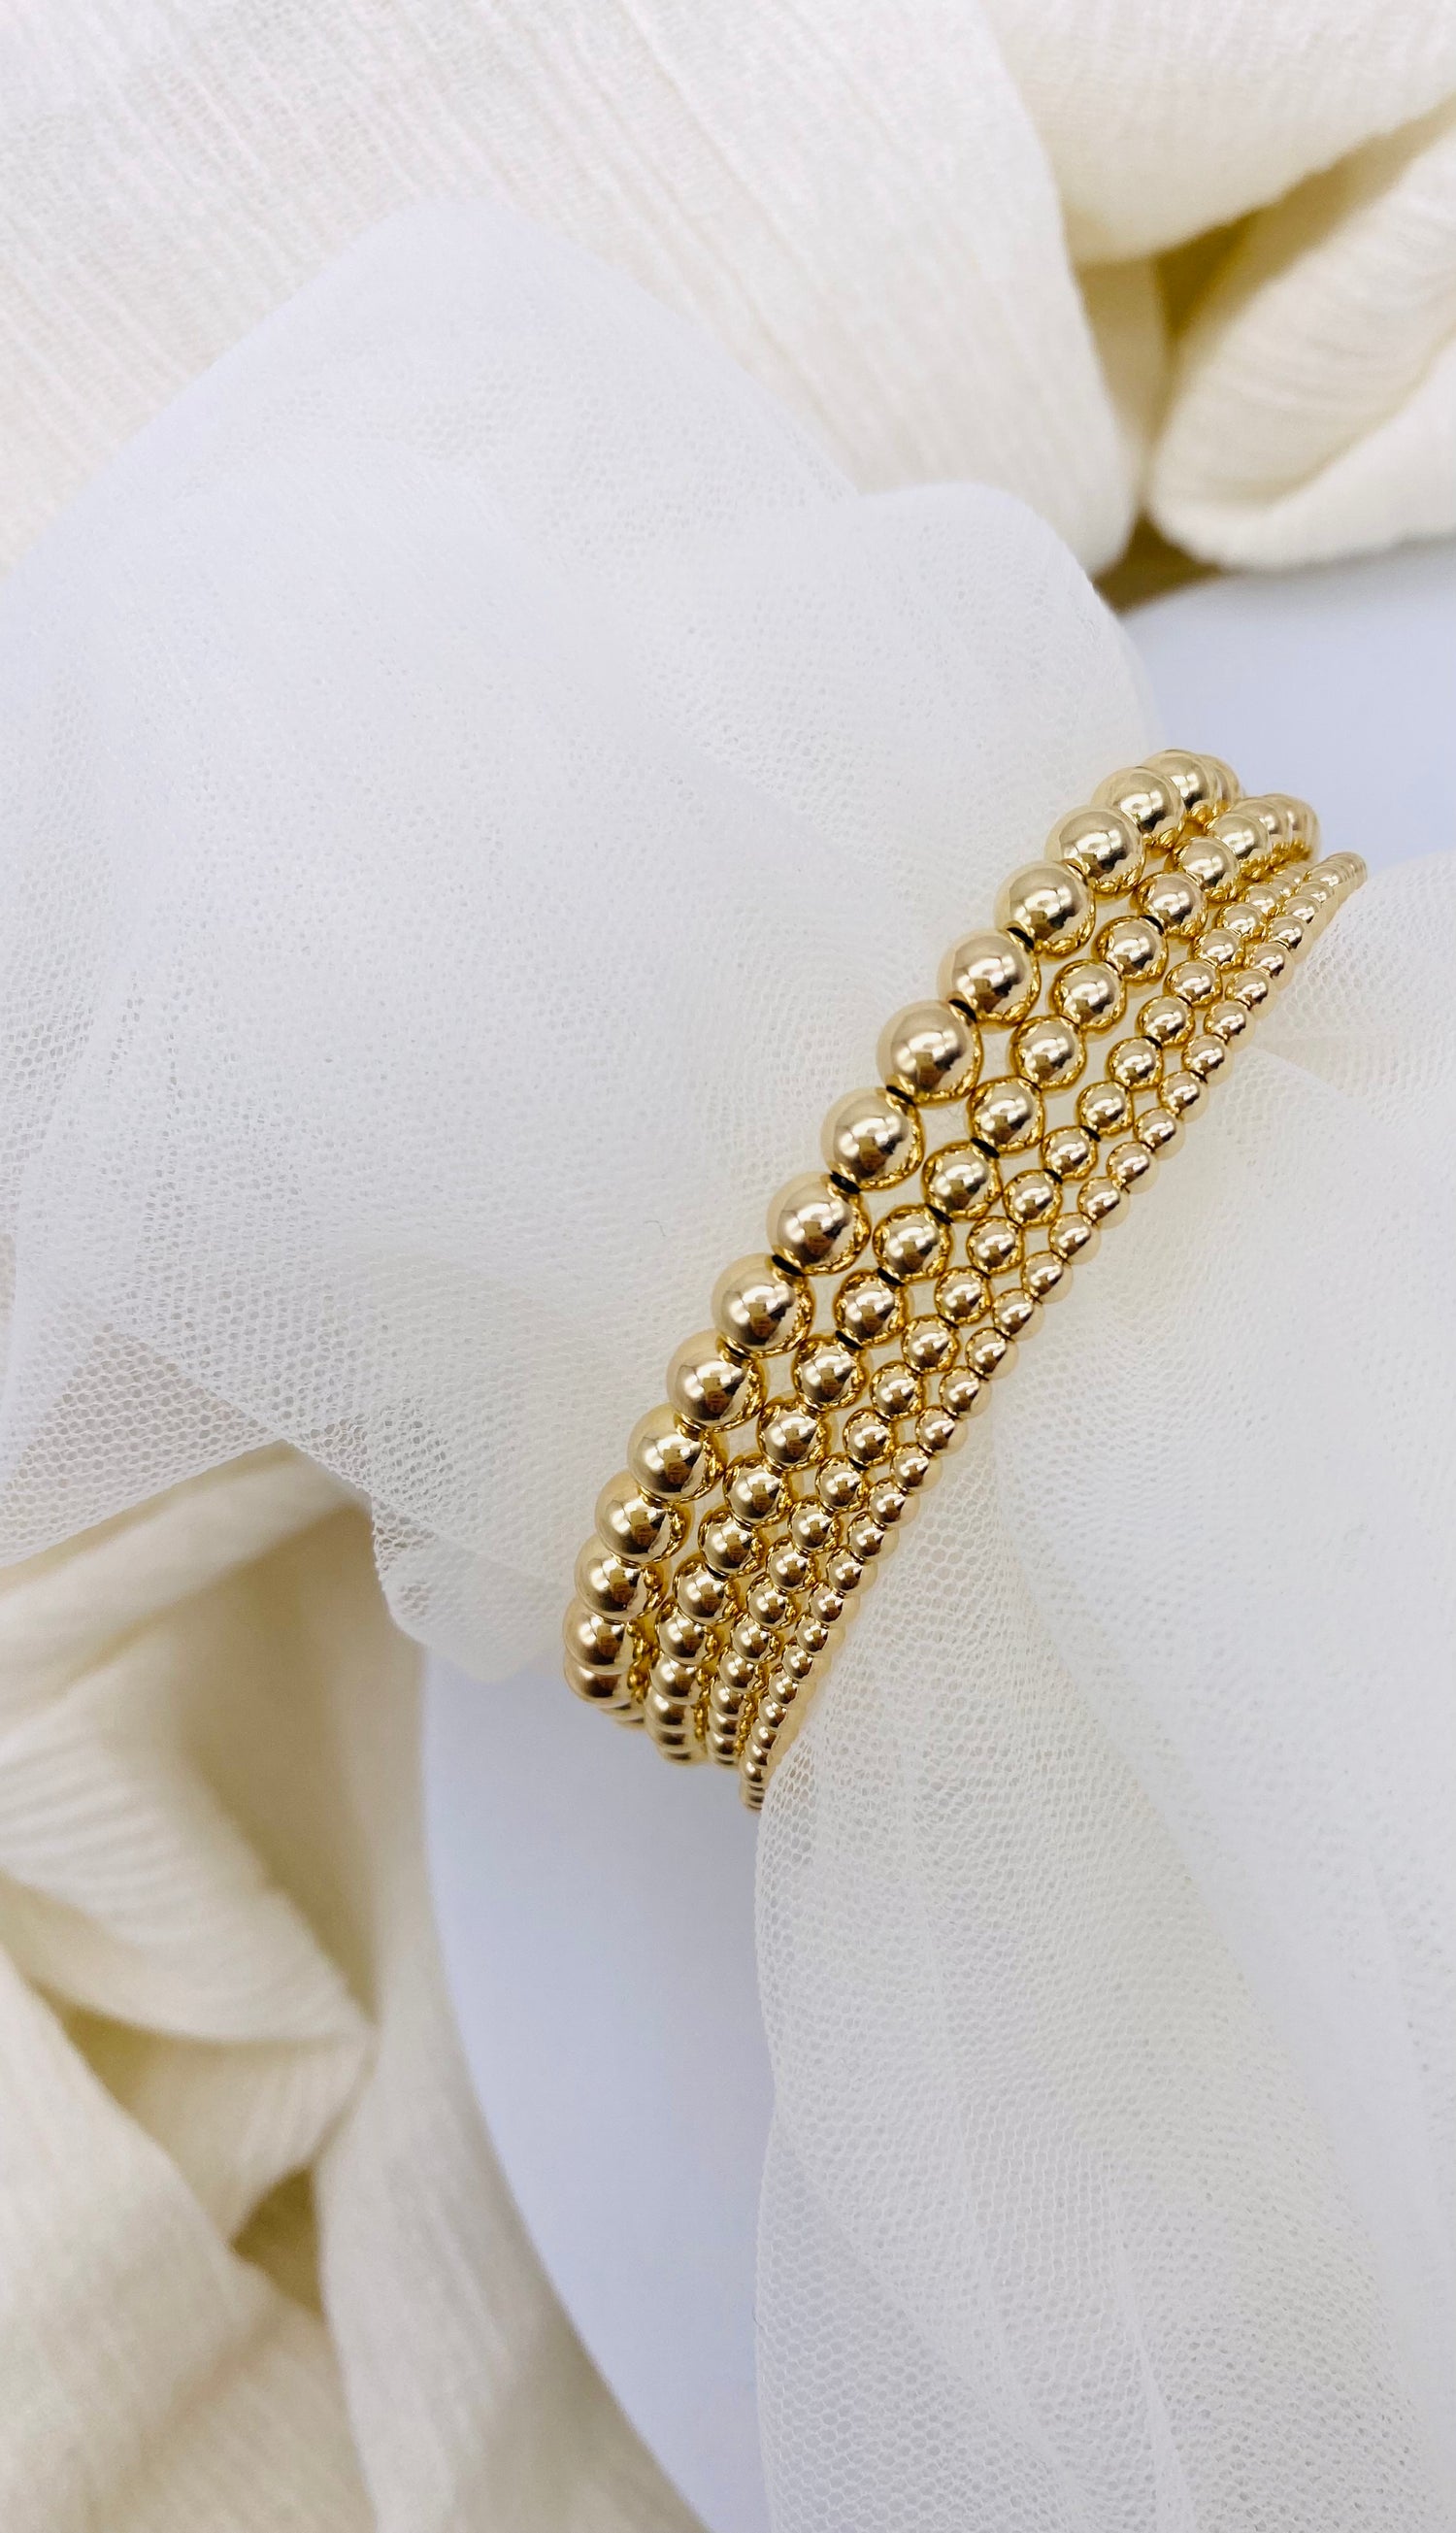 18k Gold Flower Bracelet Gold Filled Delicate Floral 